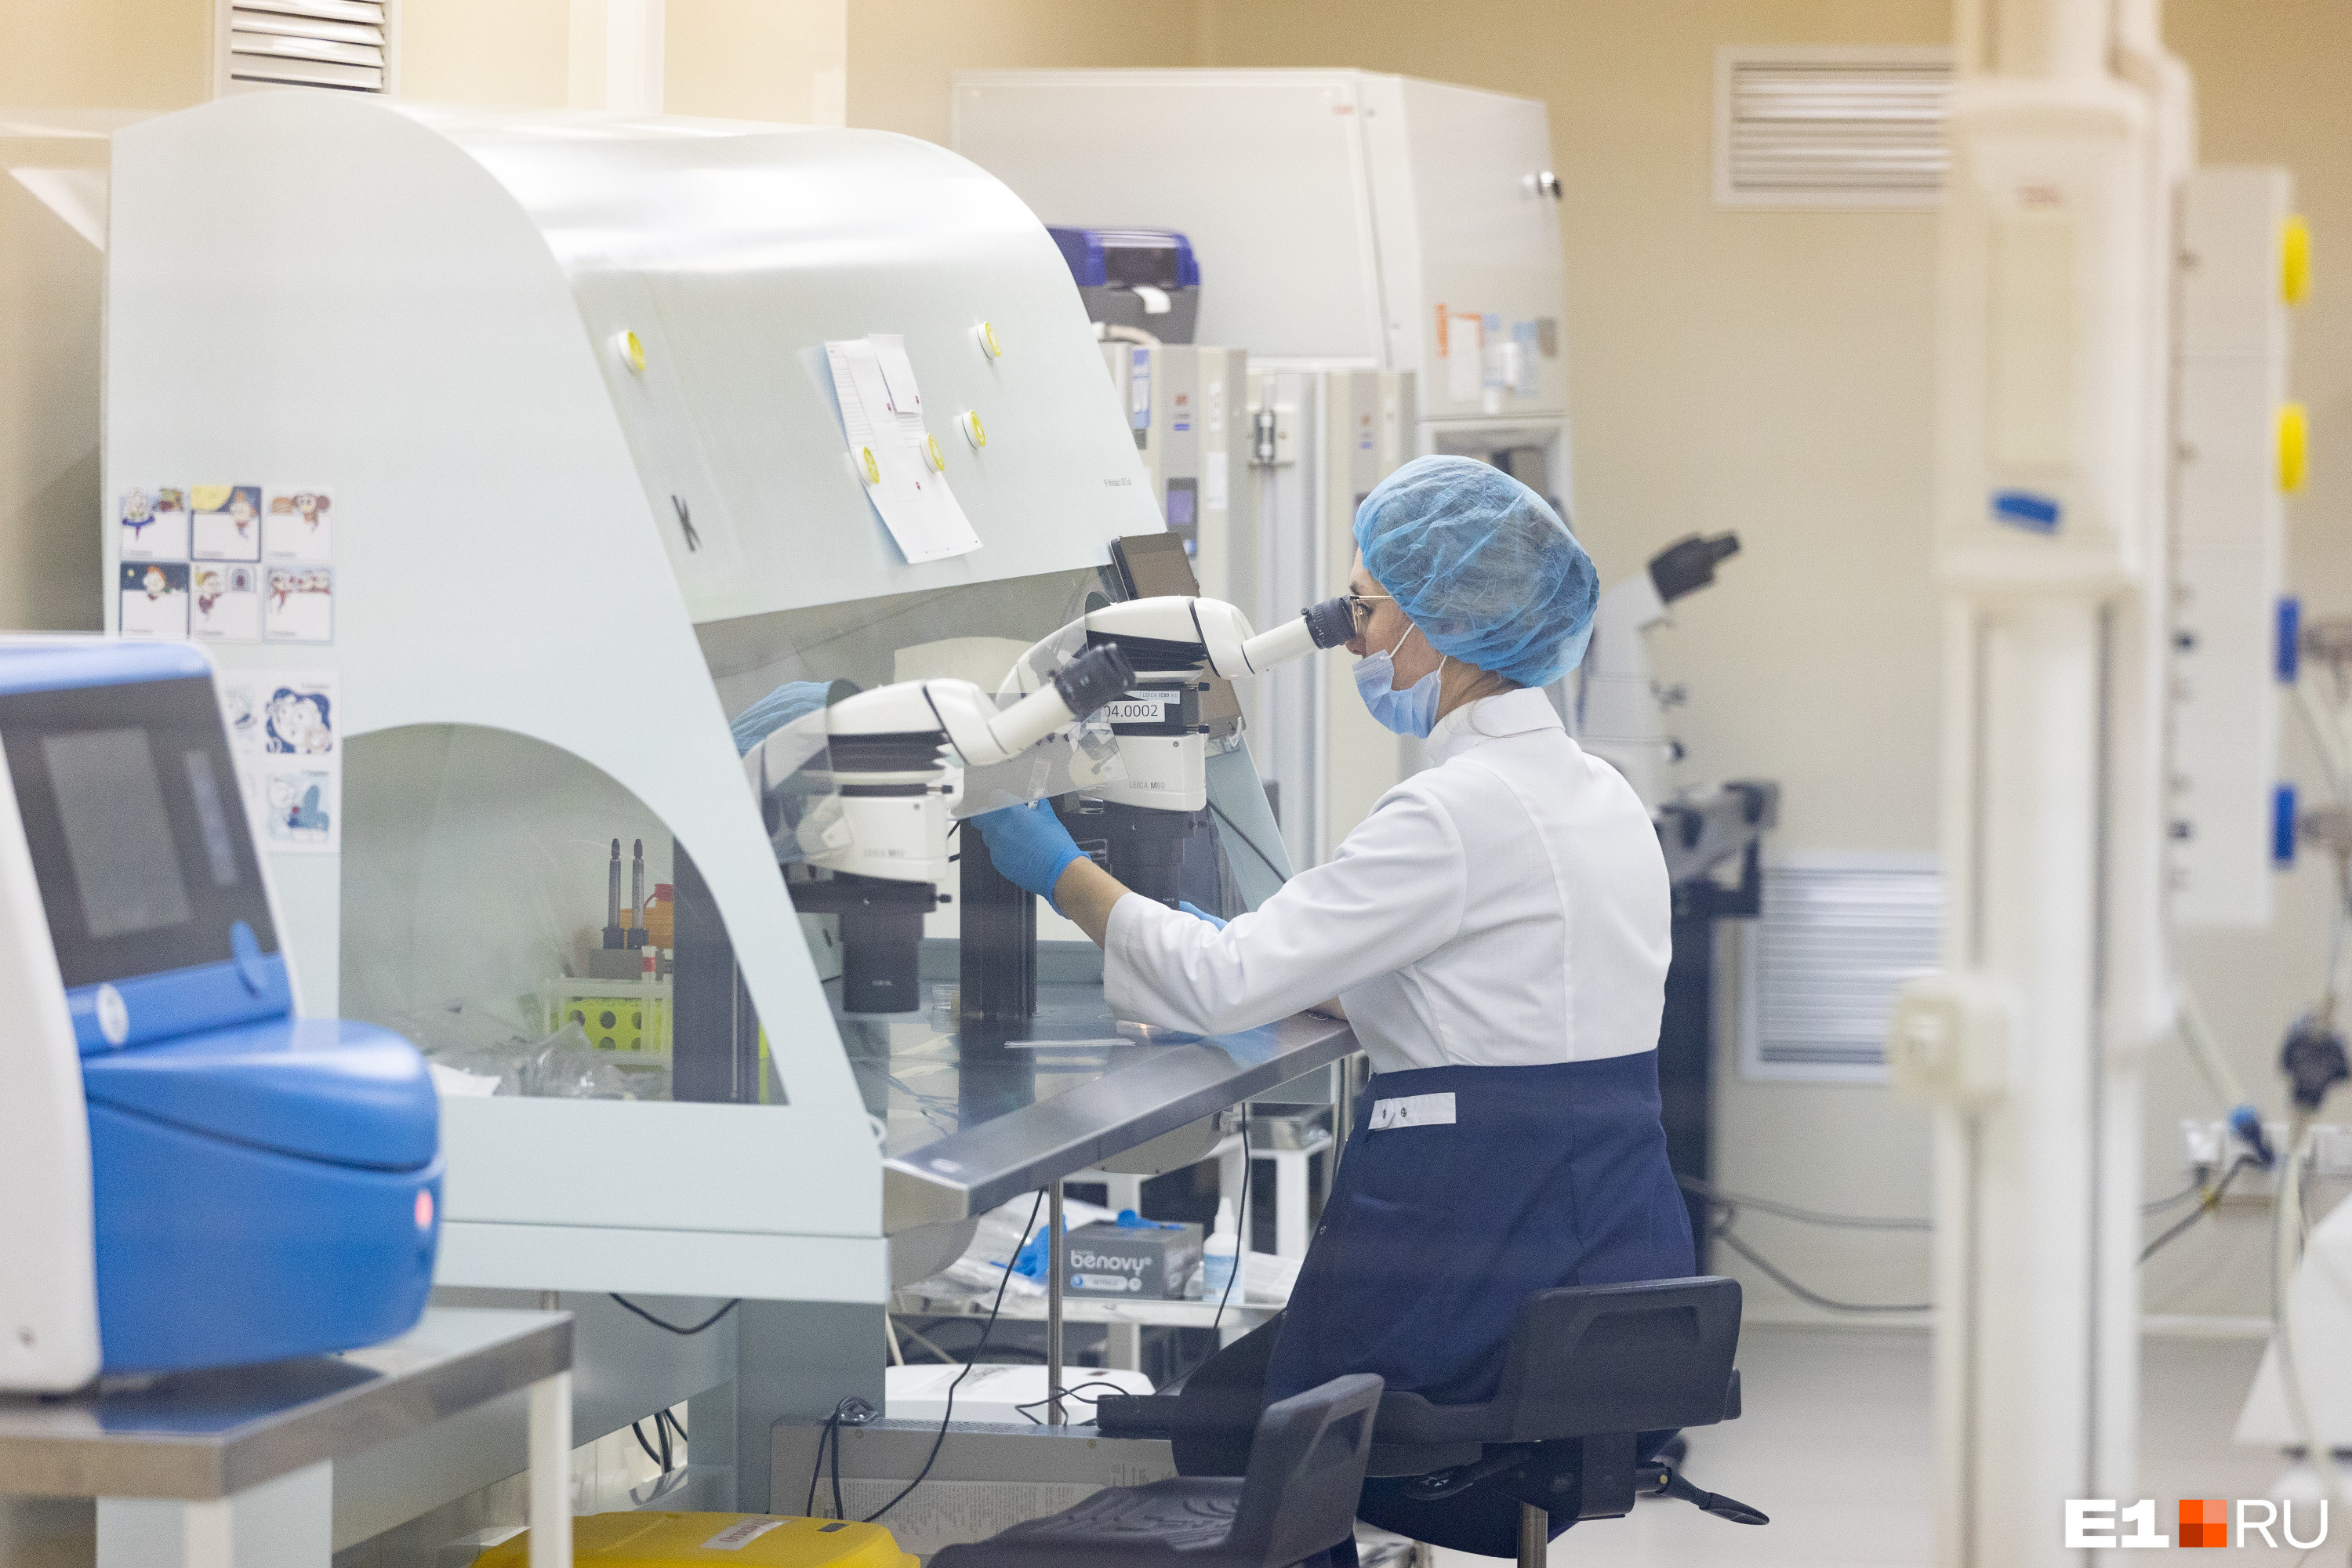 Перед процедурой донорская сперма проходит обработку в лаборатории и выдерживается в карантине целый год